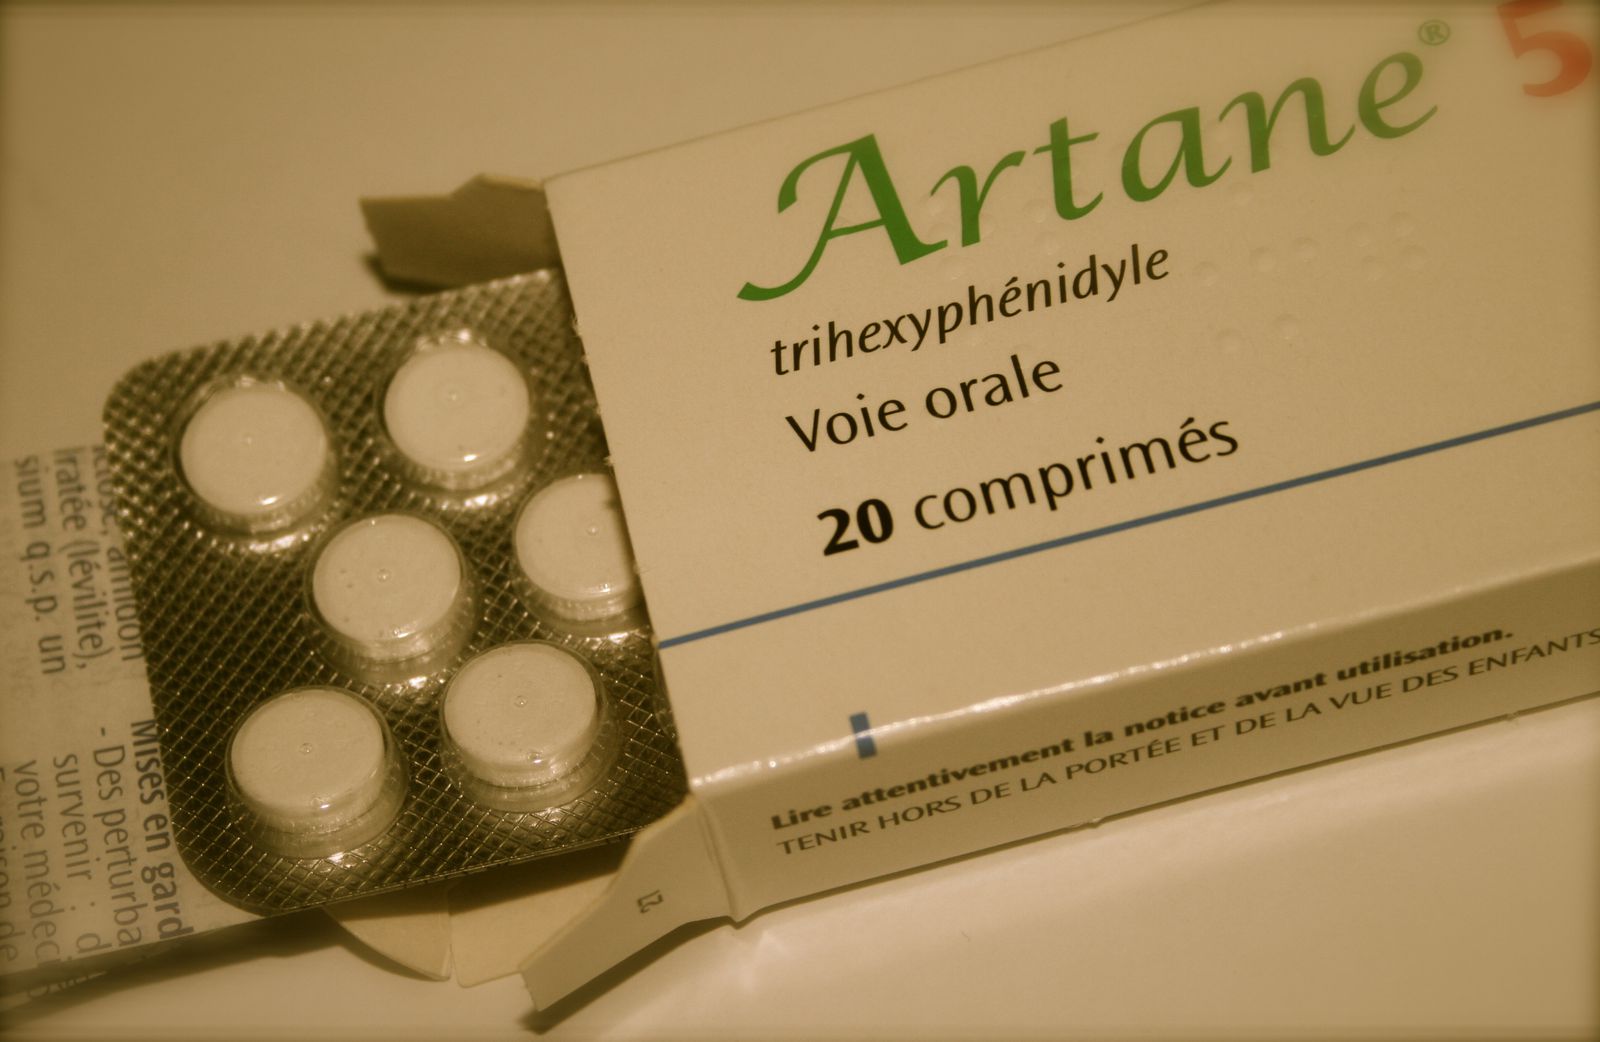 Artane No Prescription